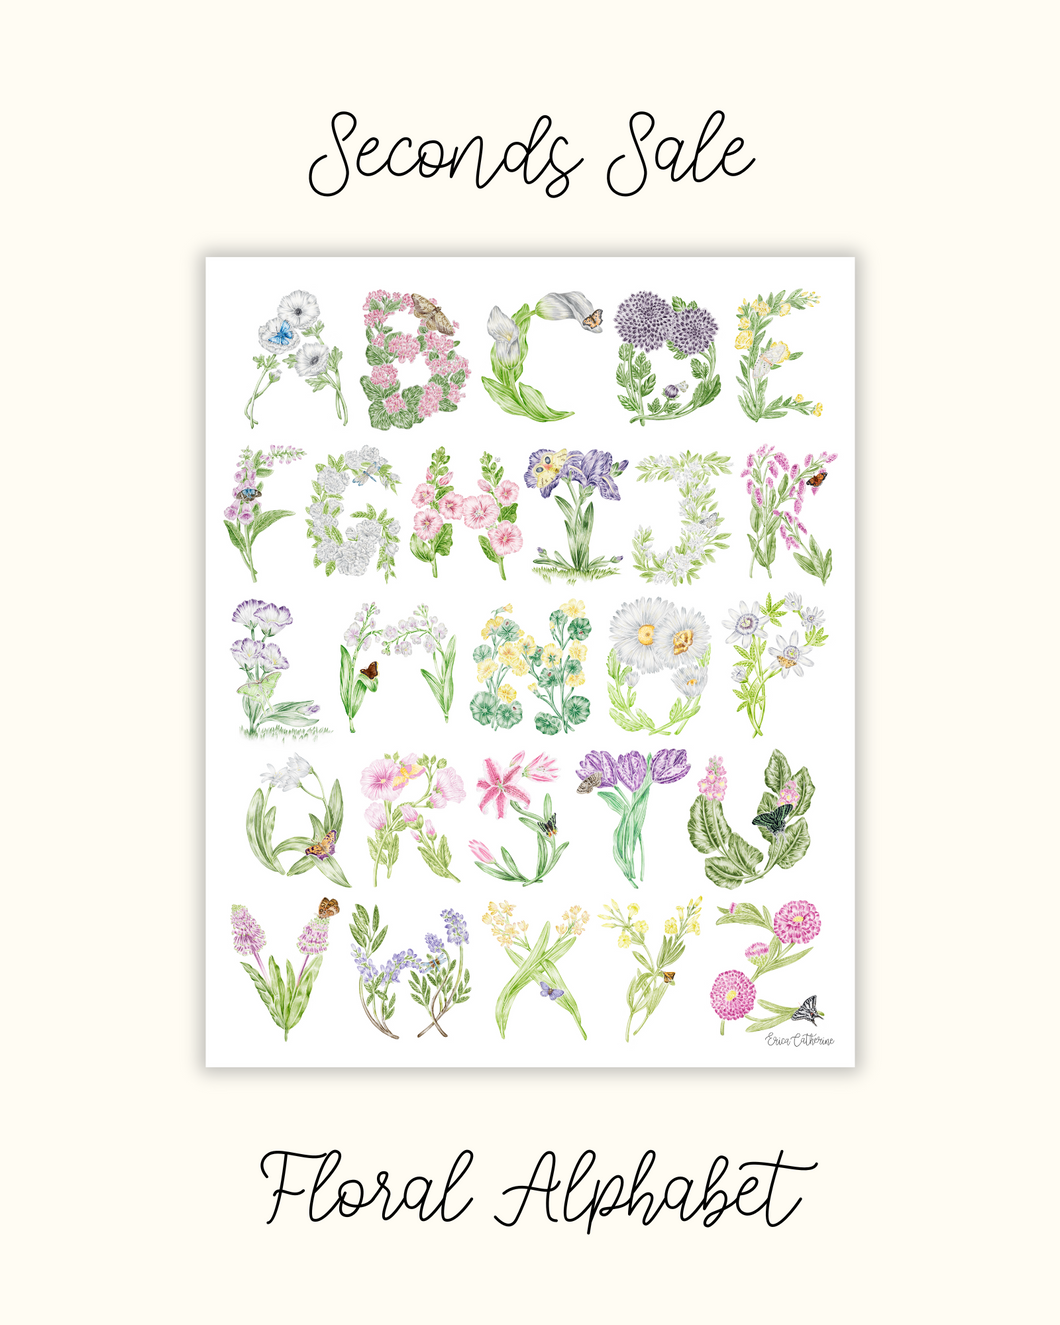 Floral Alphabet Print - Seconds Sale